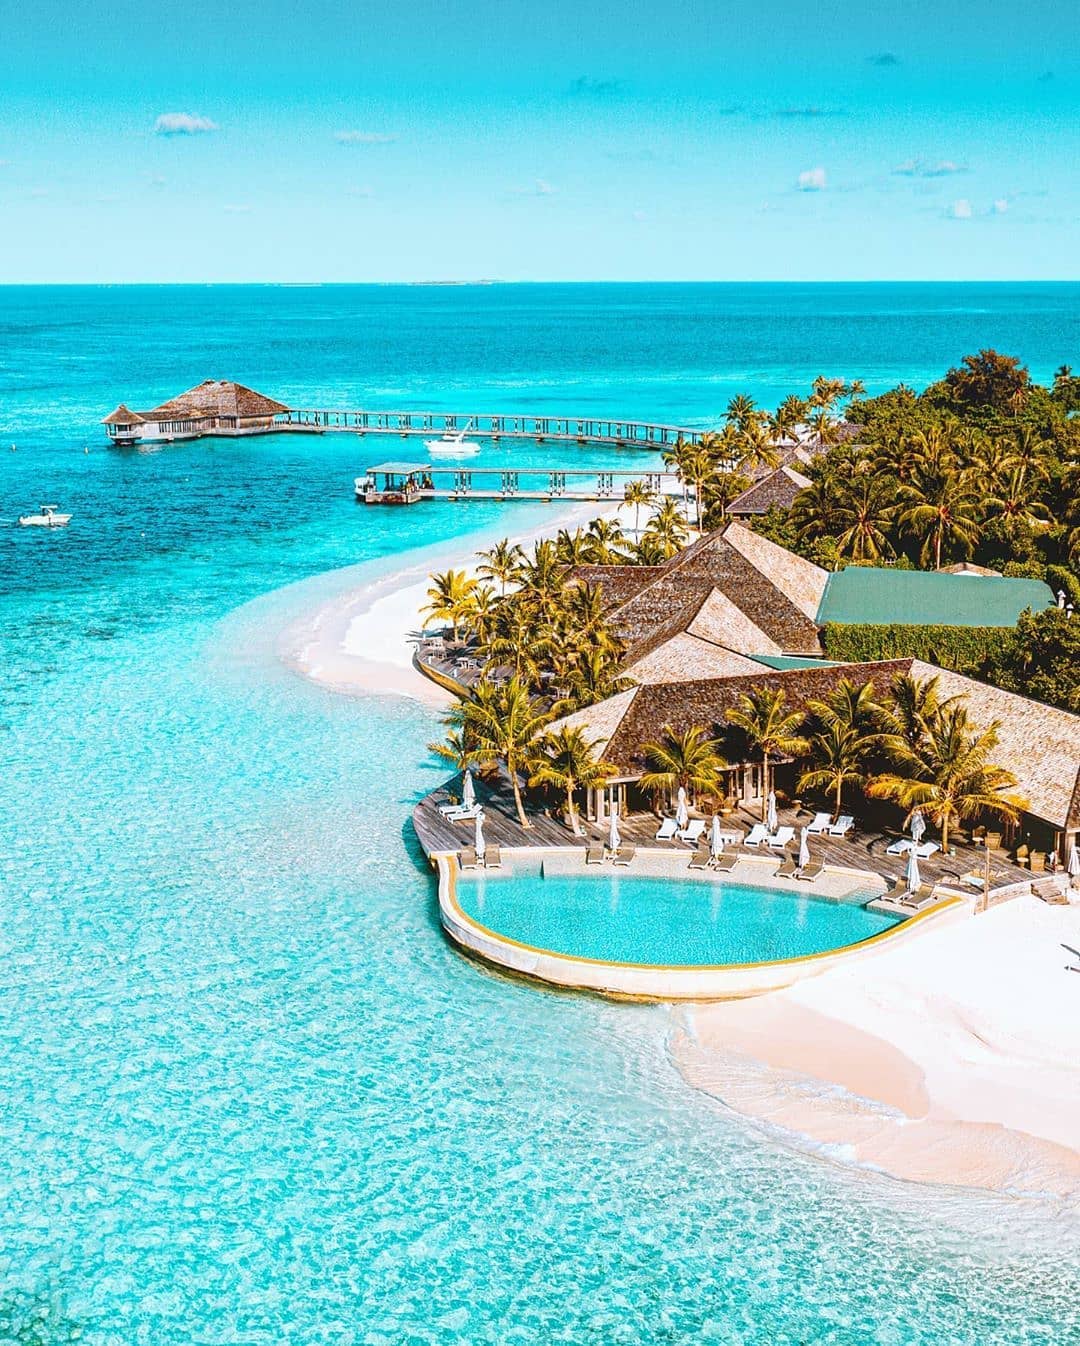 Bạn có thể du lịch tới Maldives vào bất cứ thời điểm nào trong năm